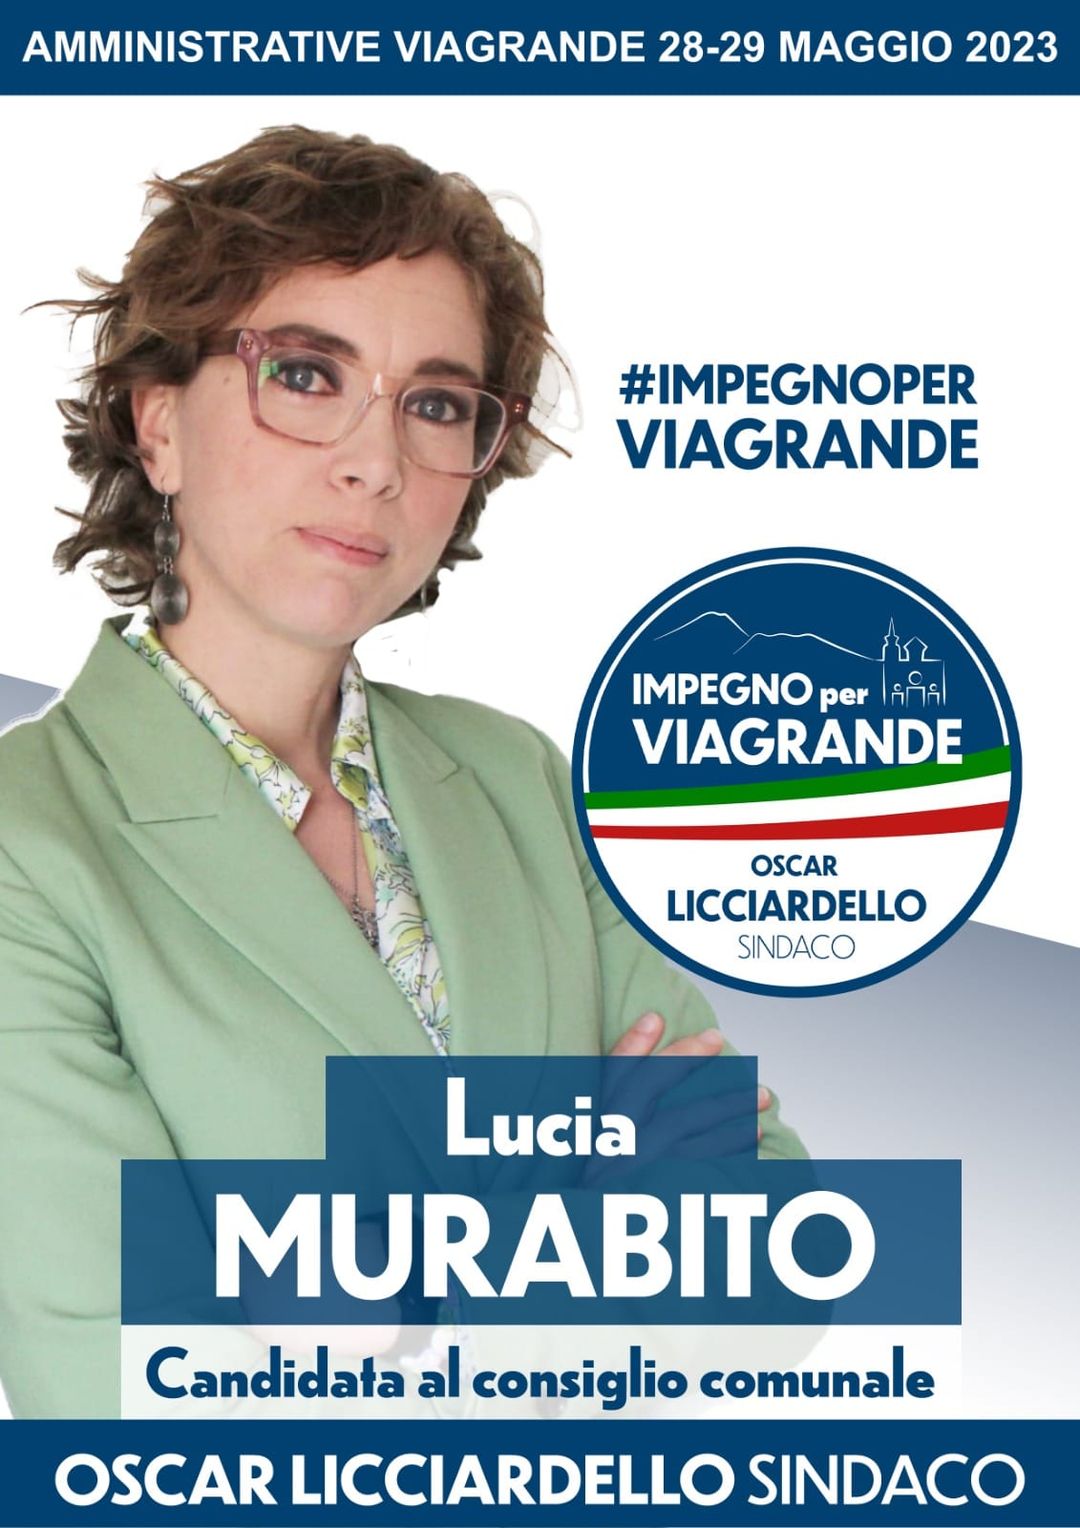 Lucia Murabito